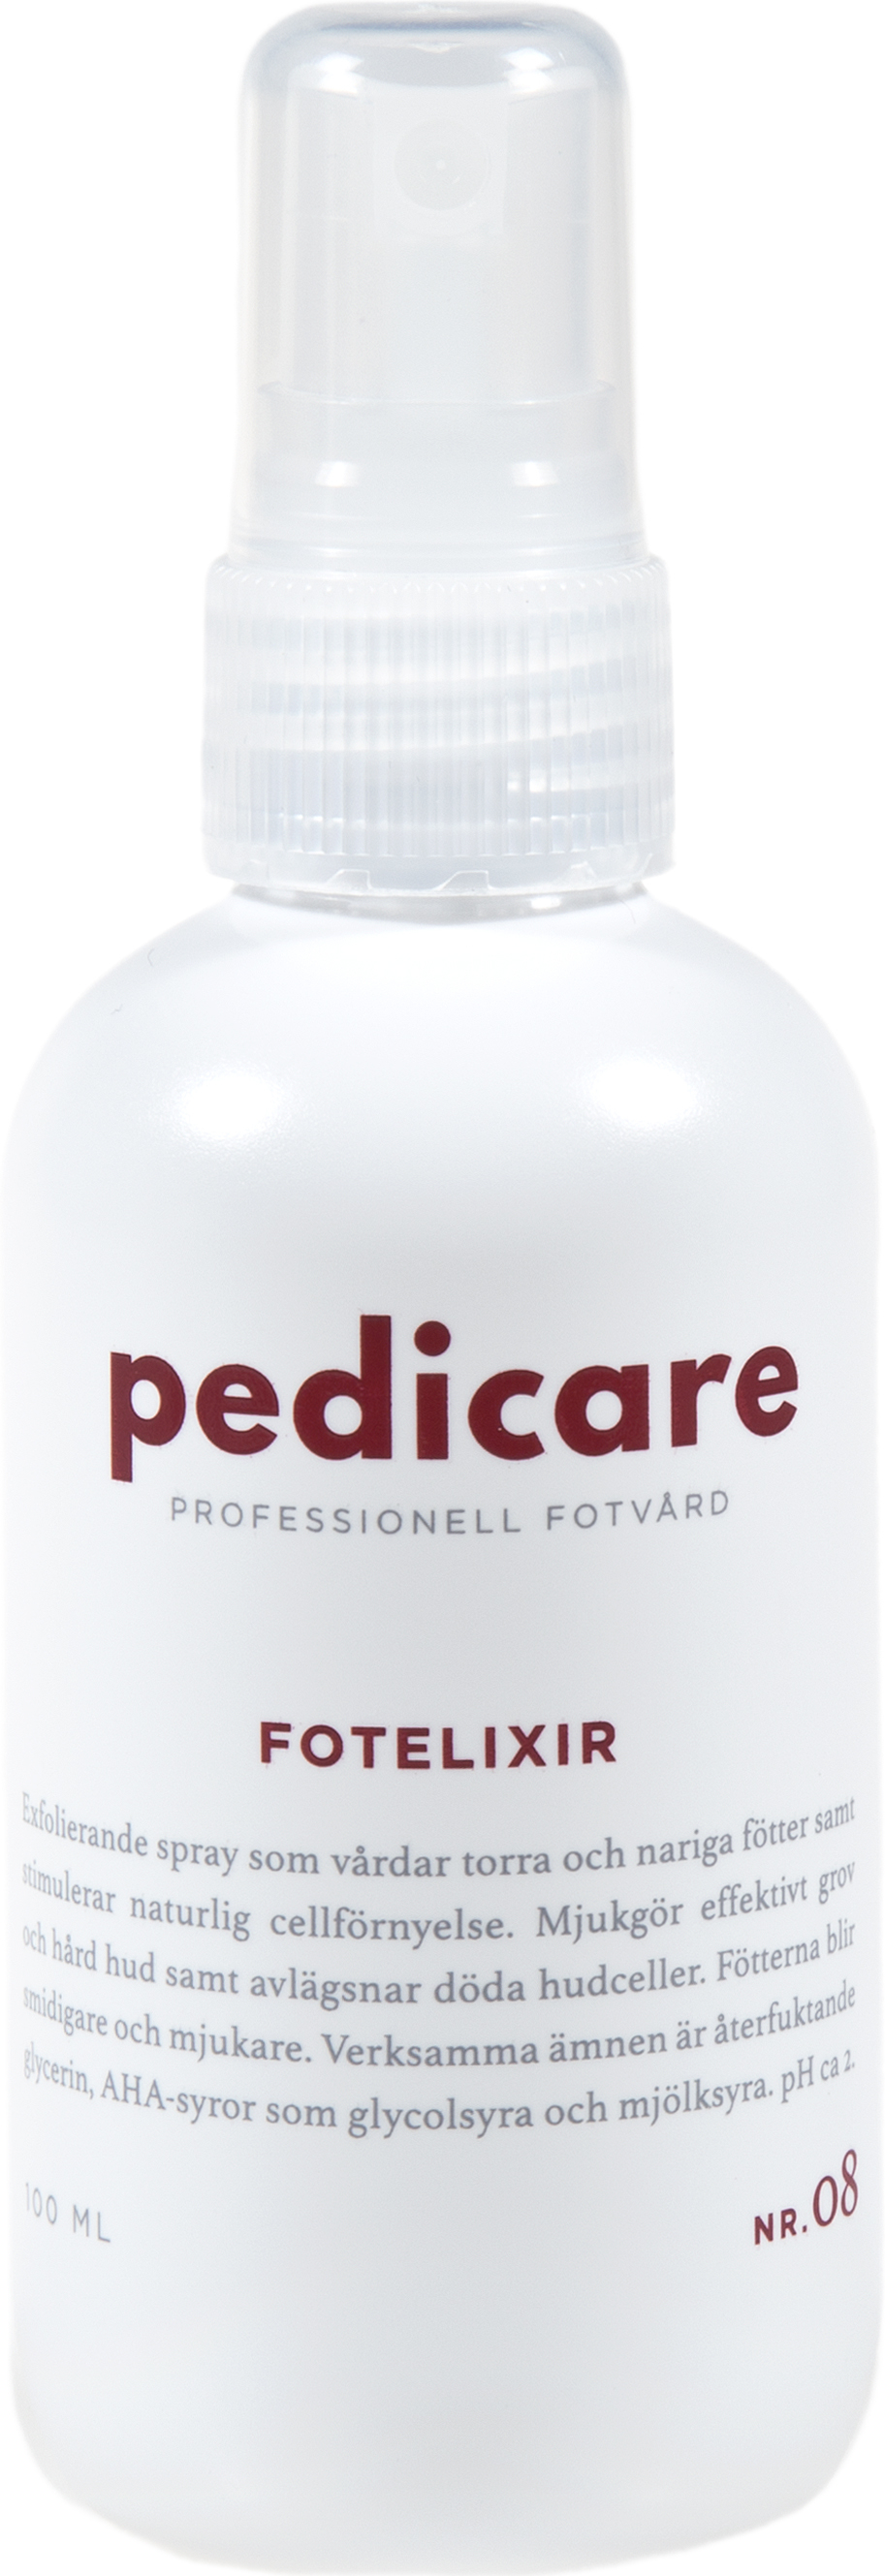 PediCare Fotelixir 100 ml